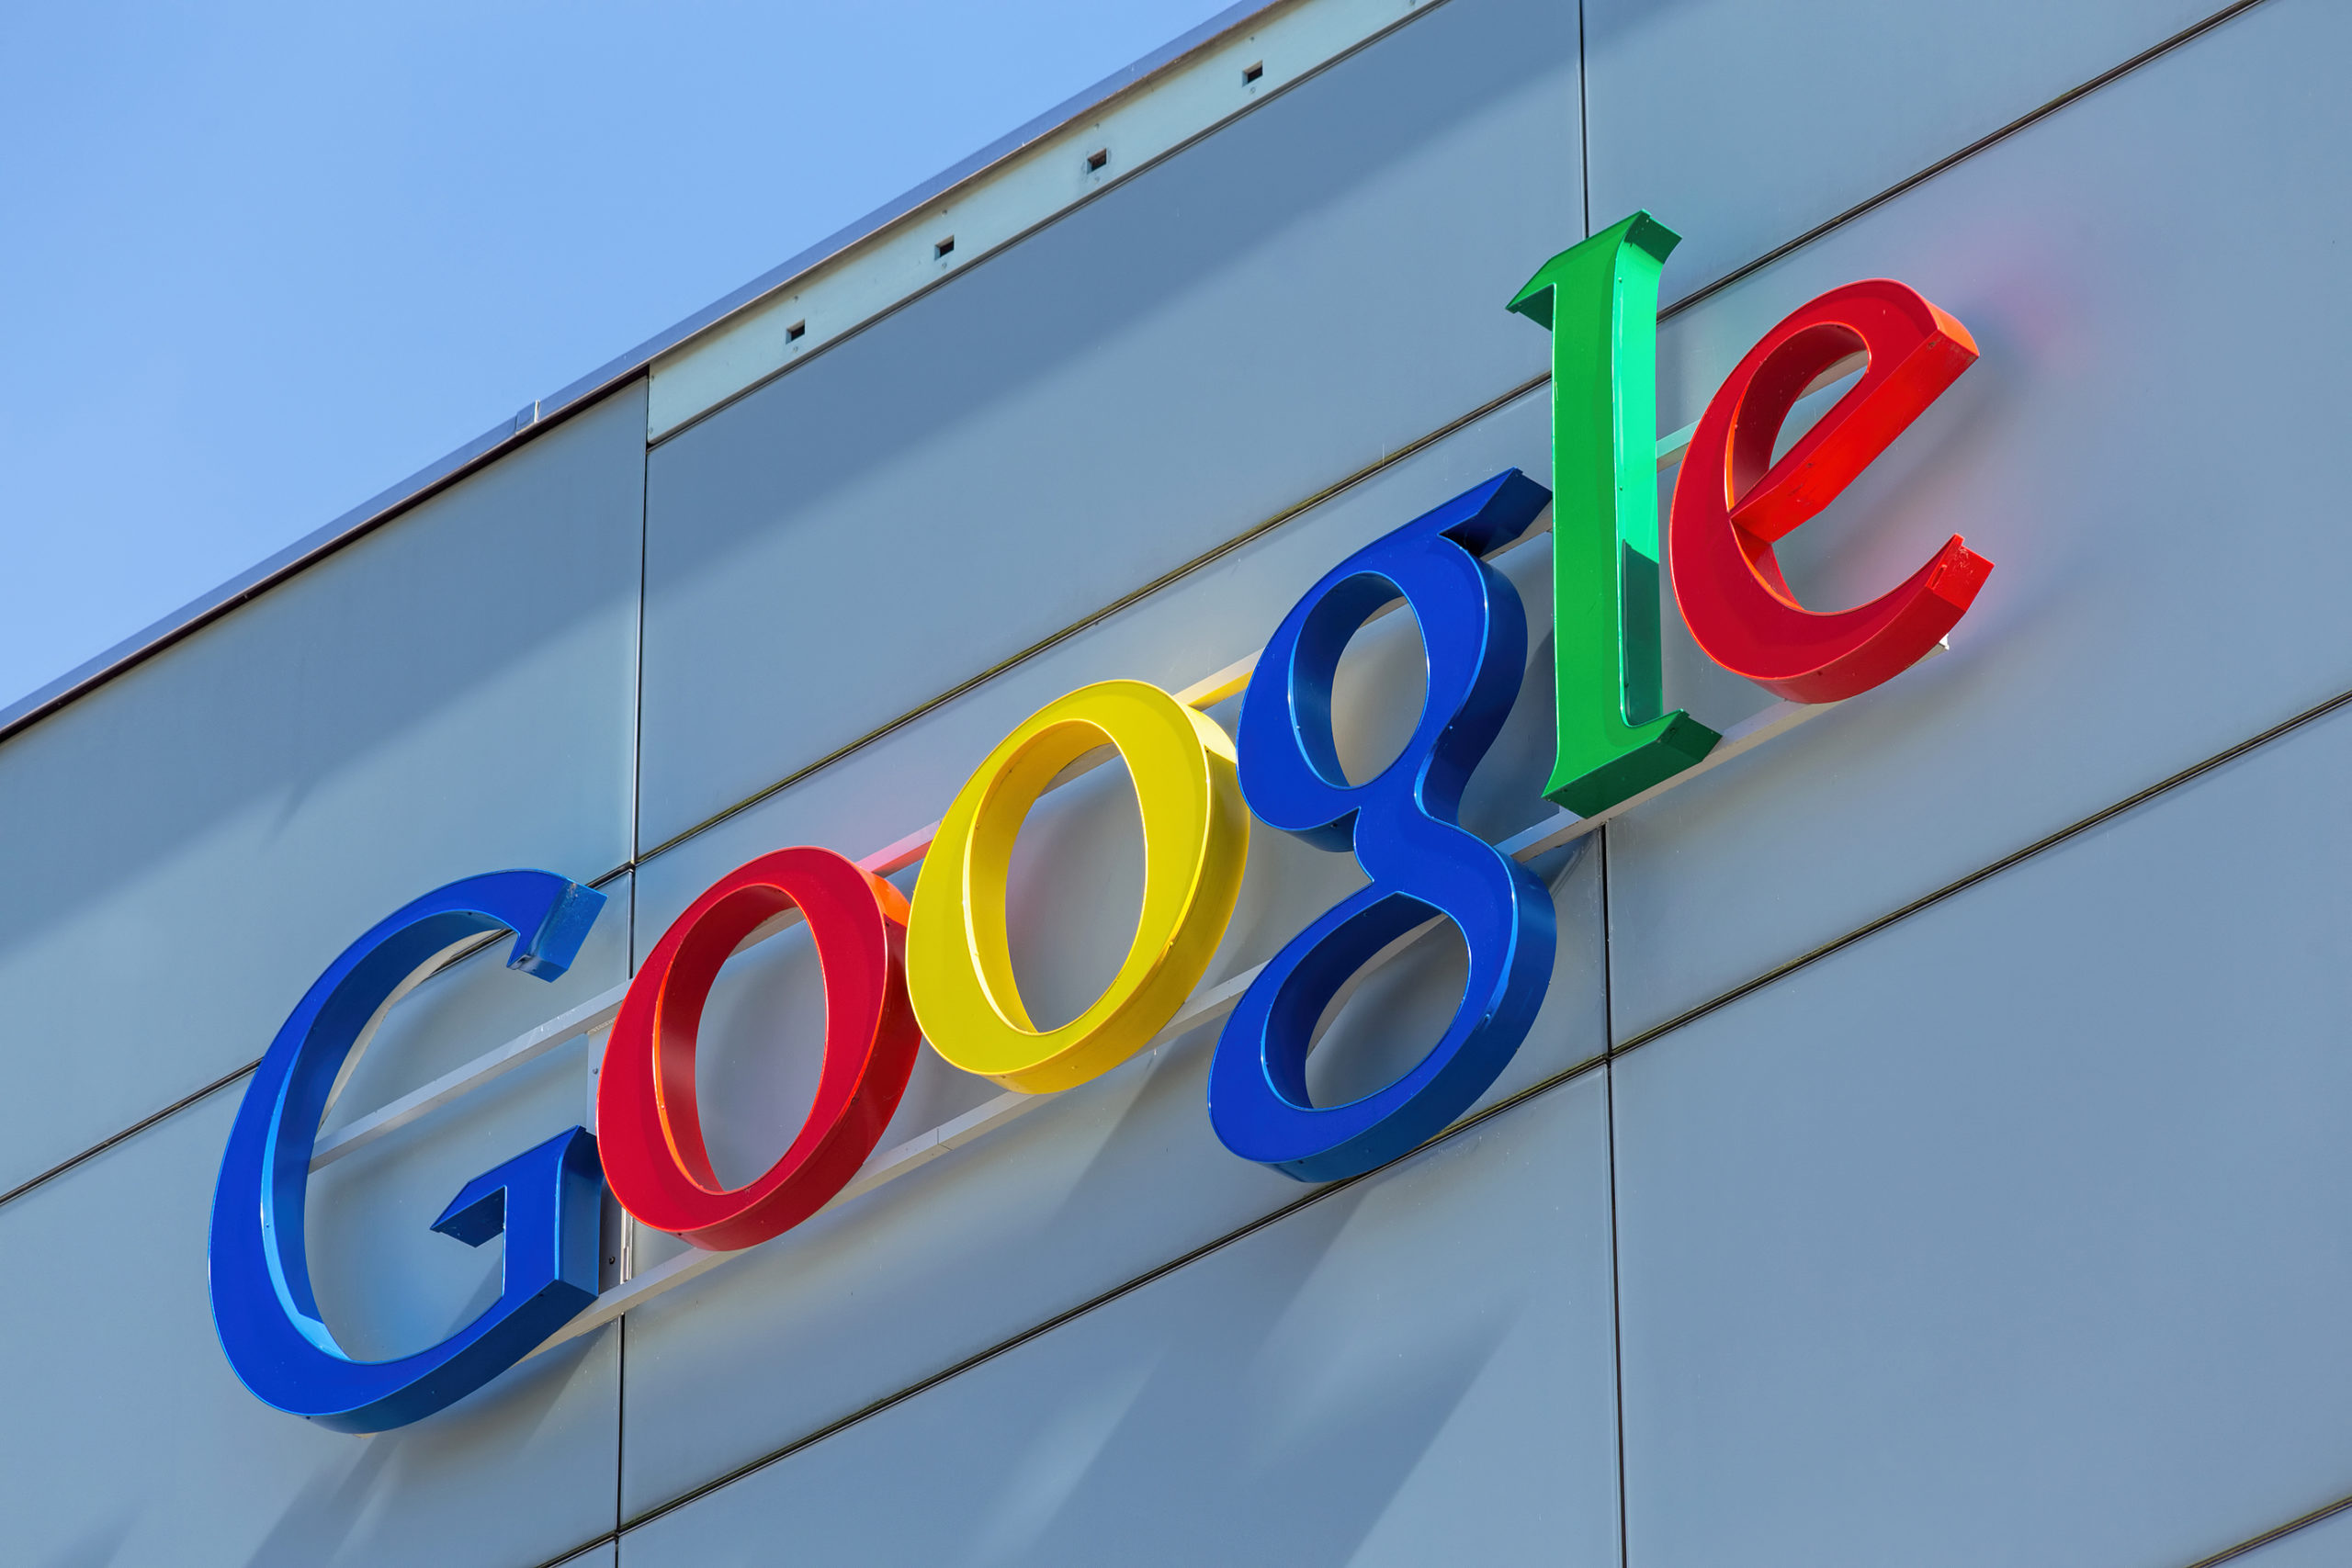 "غوغل" تلغي 12 ألف وظيفة عبر العالم